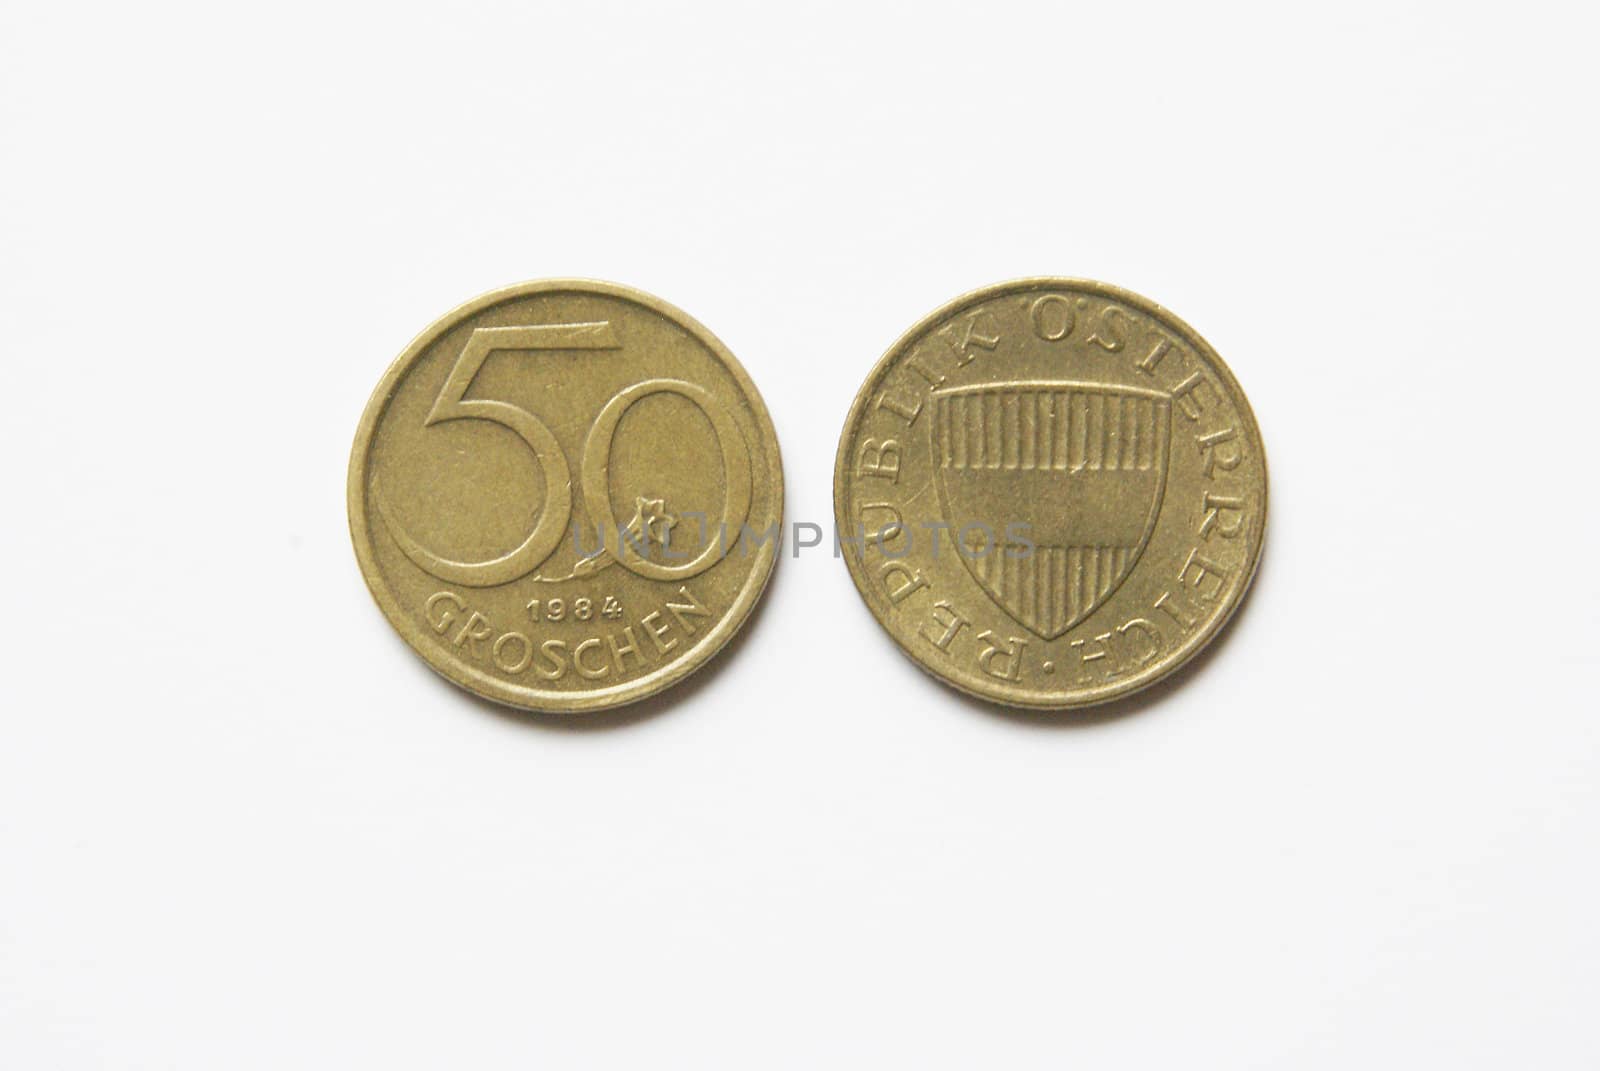 Old Austrian 50 Groschen coins (before Euro)